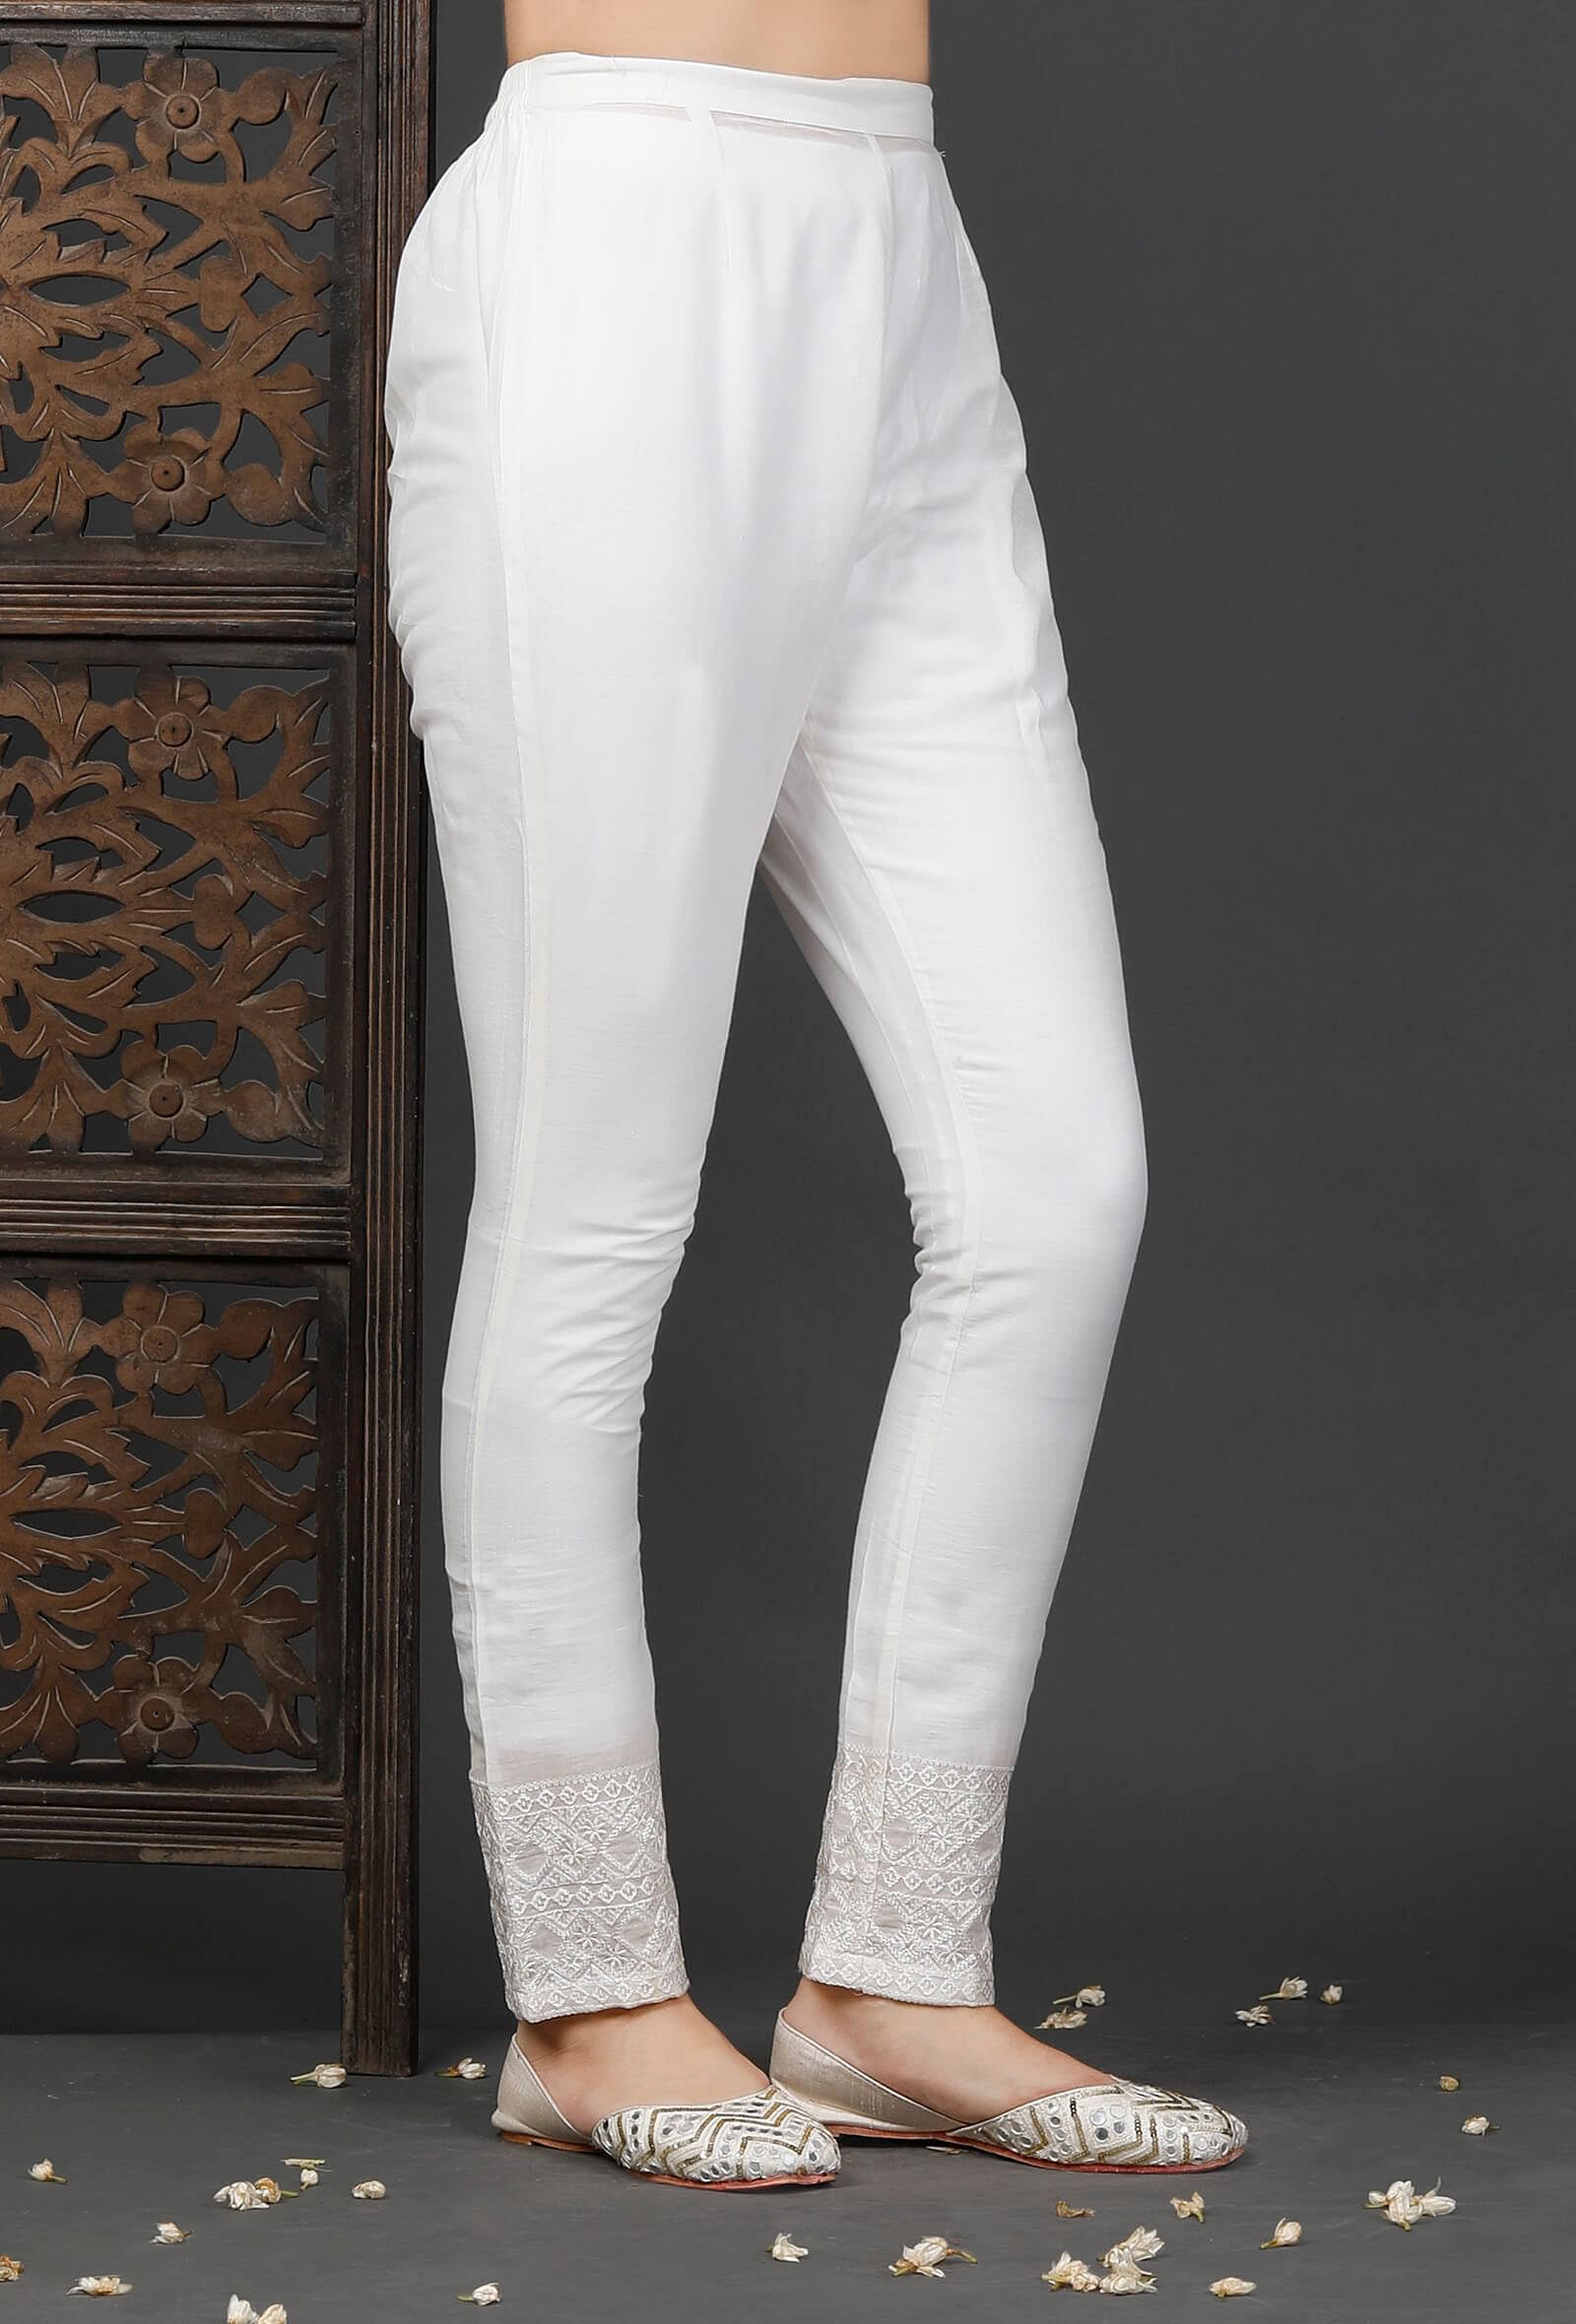 Buy White Trousers  Pants for Women by Silverfly Online  Ajiocom